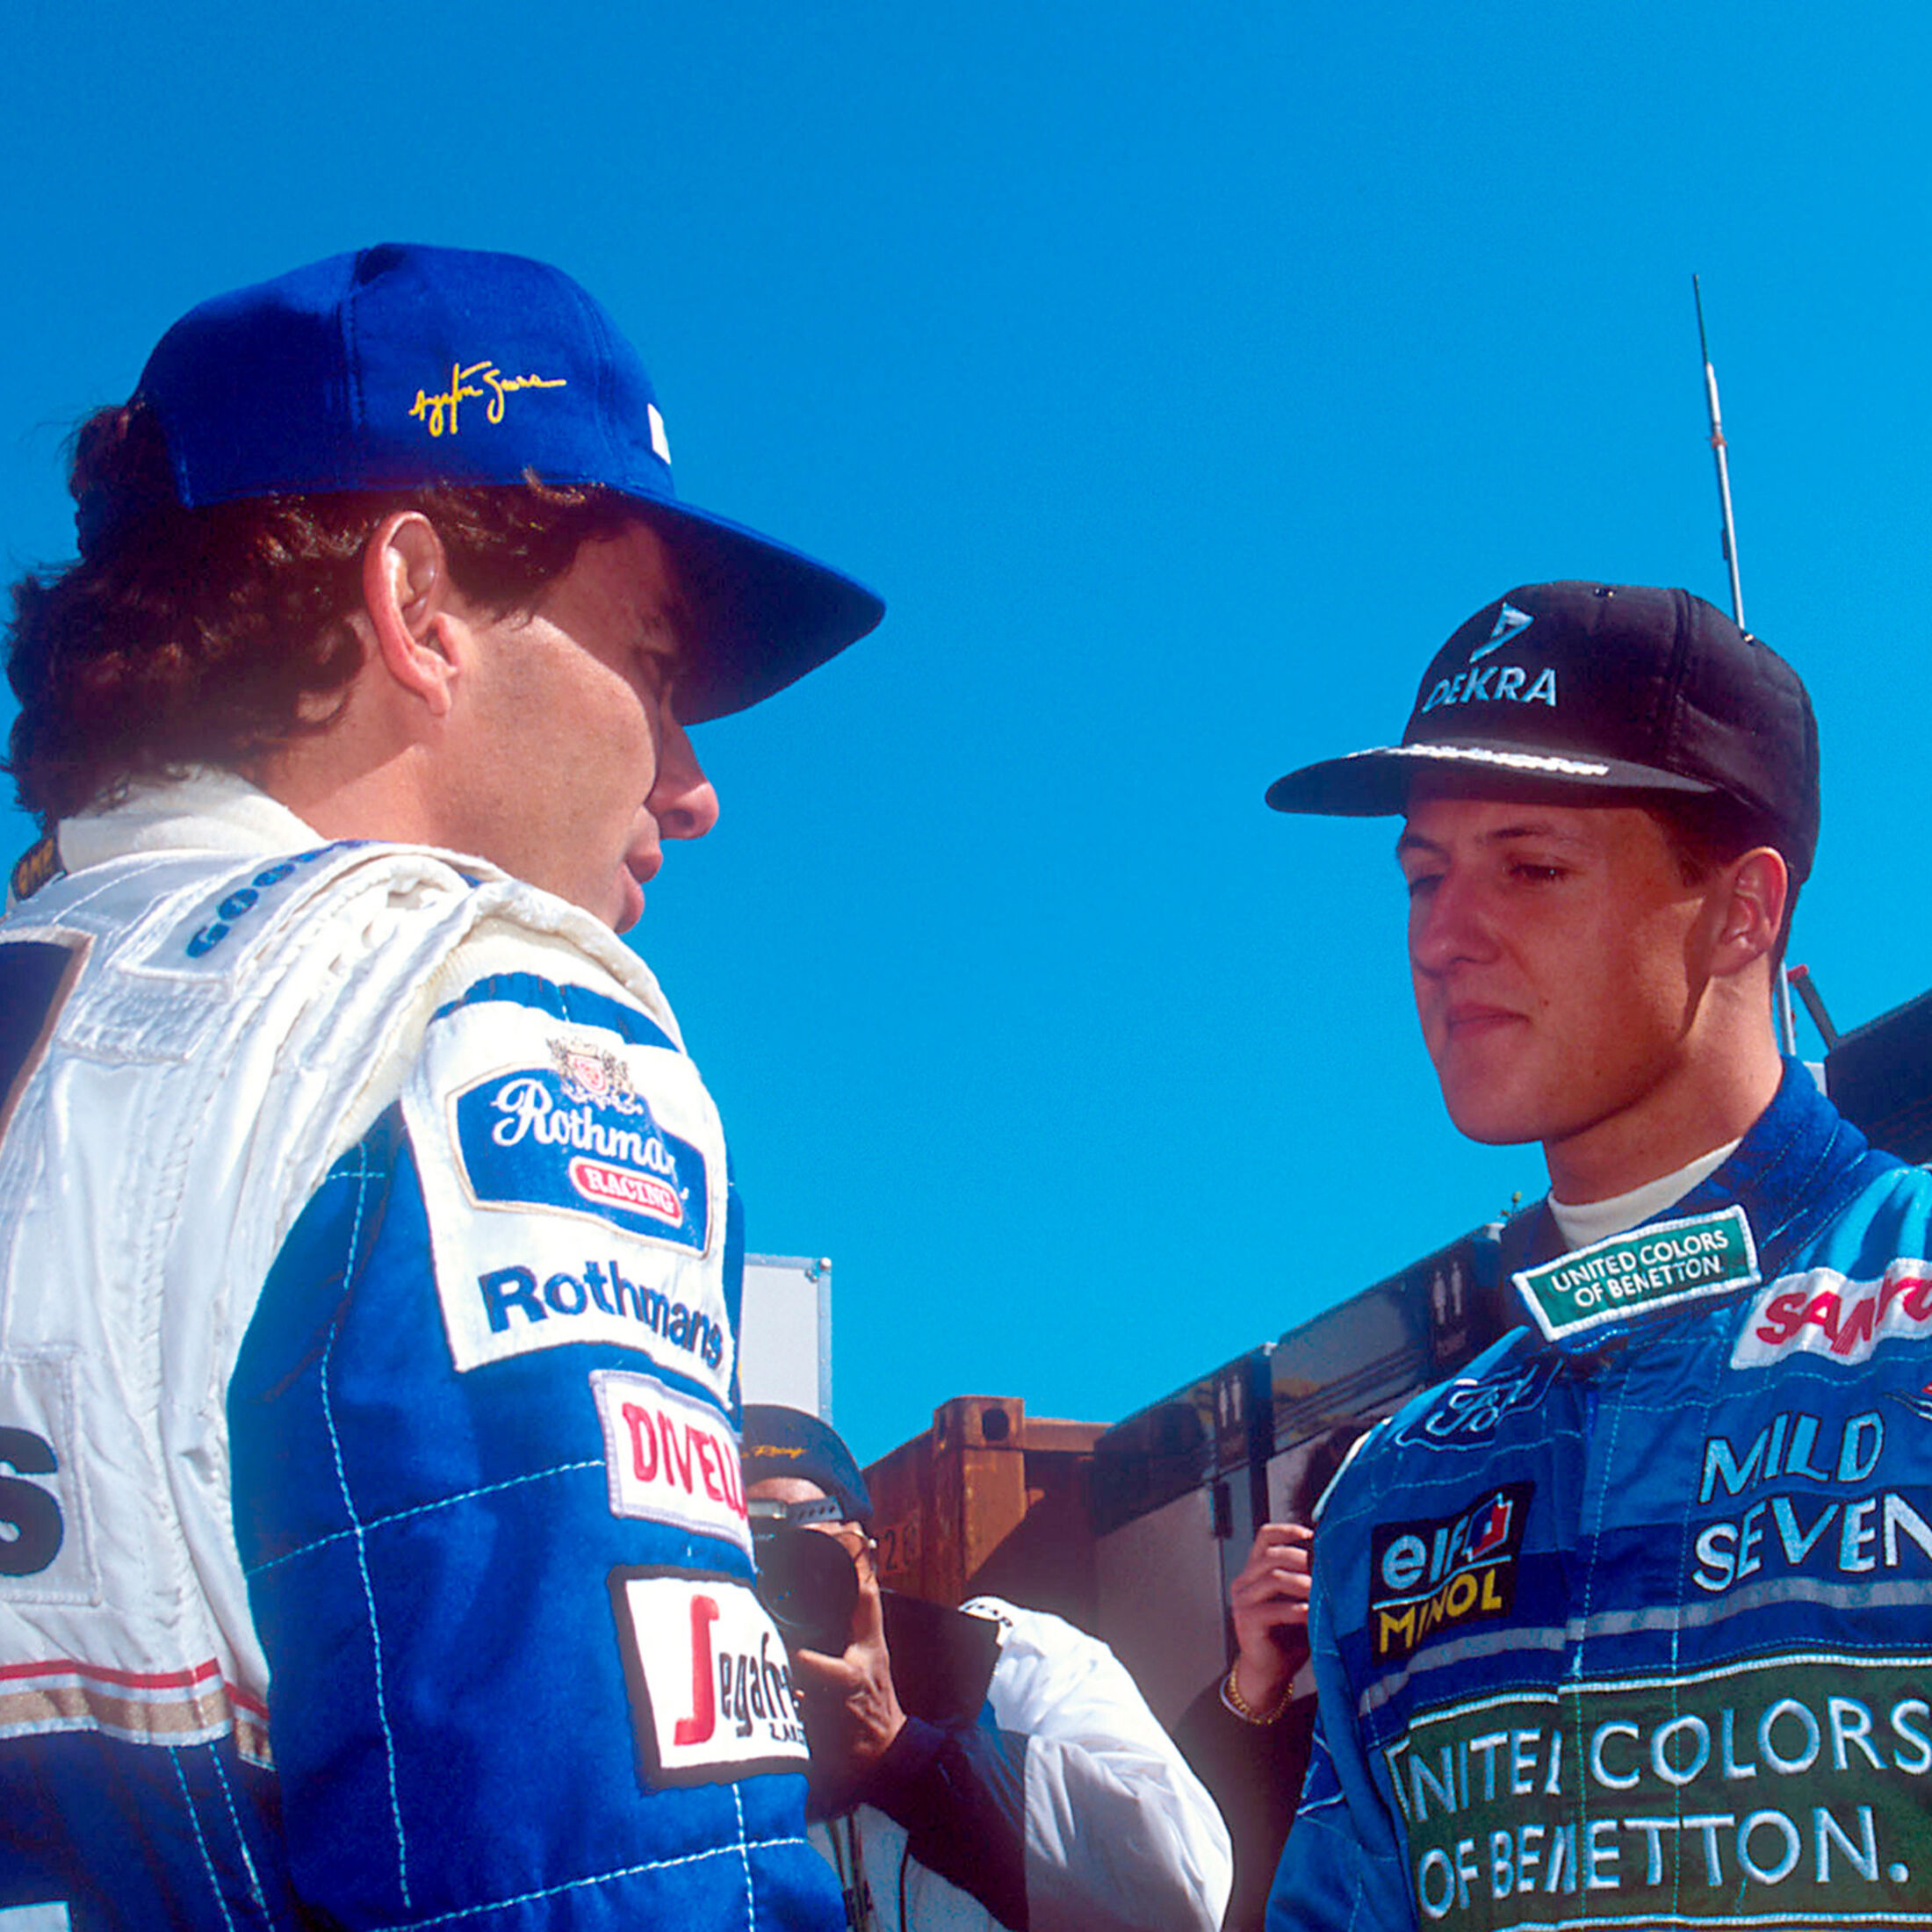 Senna-Zeitzeuge Niki Lauda (3): Spannung vor Duell mit Schumacher